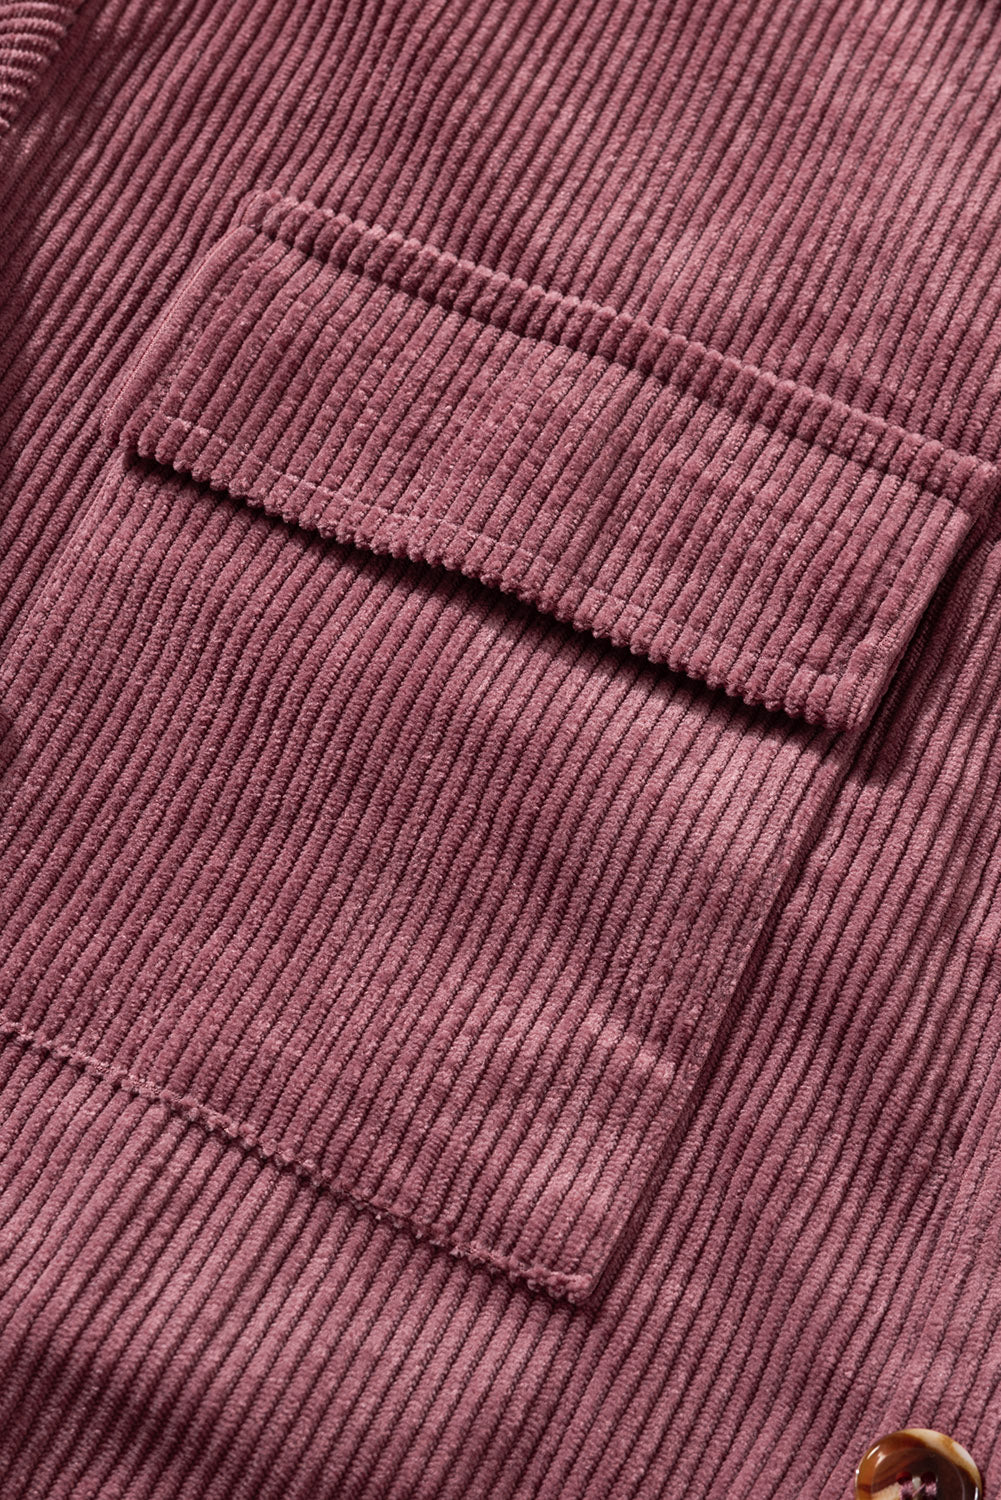 Lilafarbene, feuerrote, gerippte, strukturierte Hemdjacke mit Taschen und Knöpfen